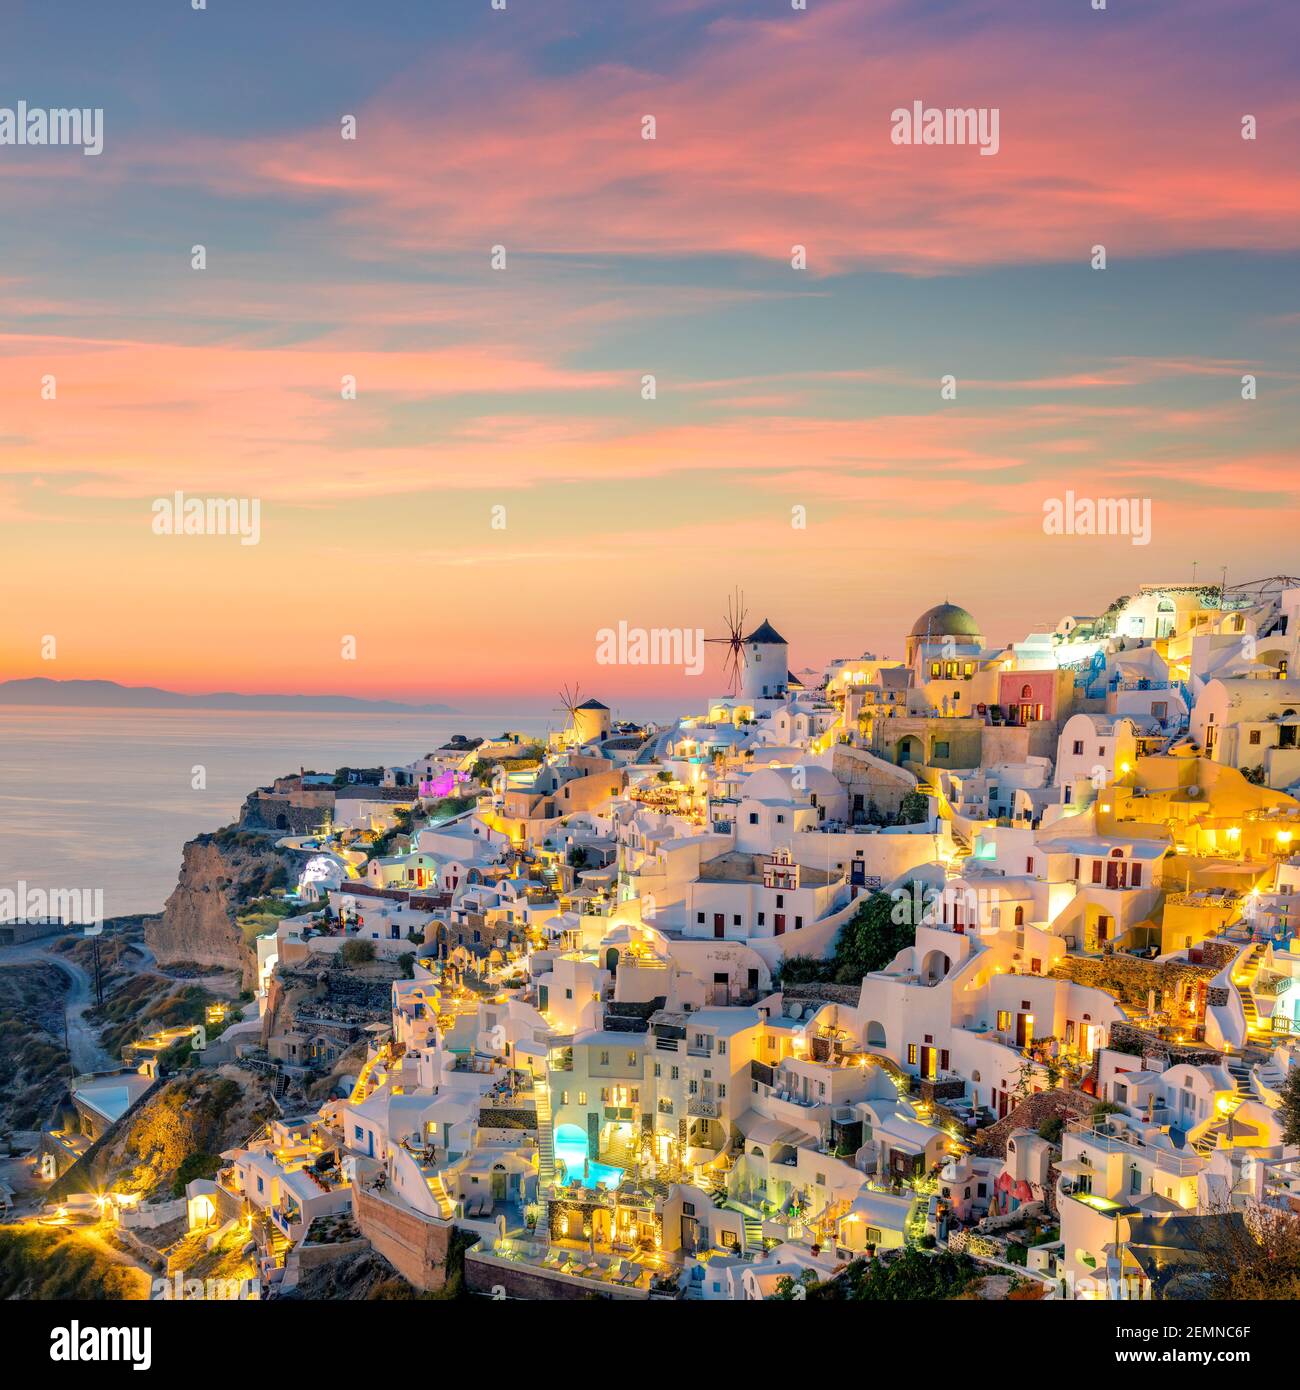 Coucher de soleil vue de nuit du célèbre village grec Oia sur l'île de Santorini en Grèce. Santorini est une destination de voyage emblématique en Grèce, célèbre de ses couchers de soleil Banque D'Images